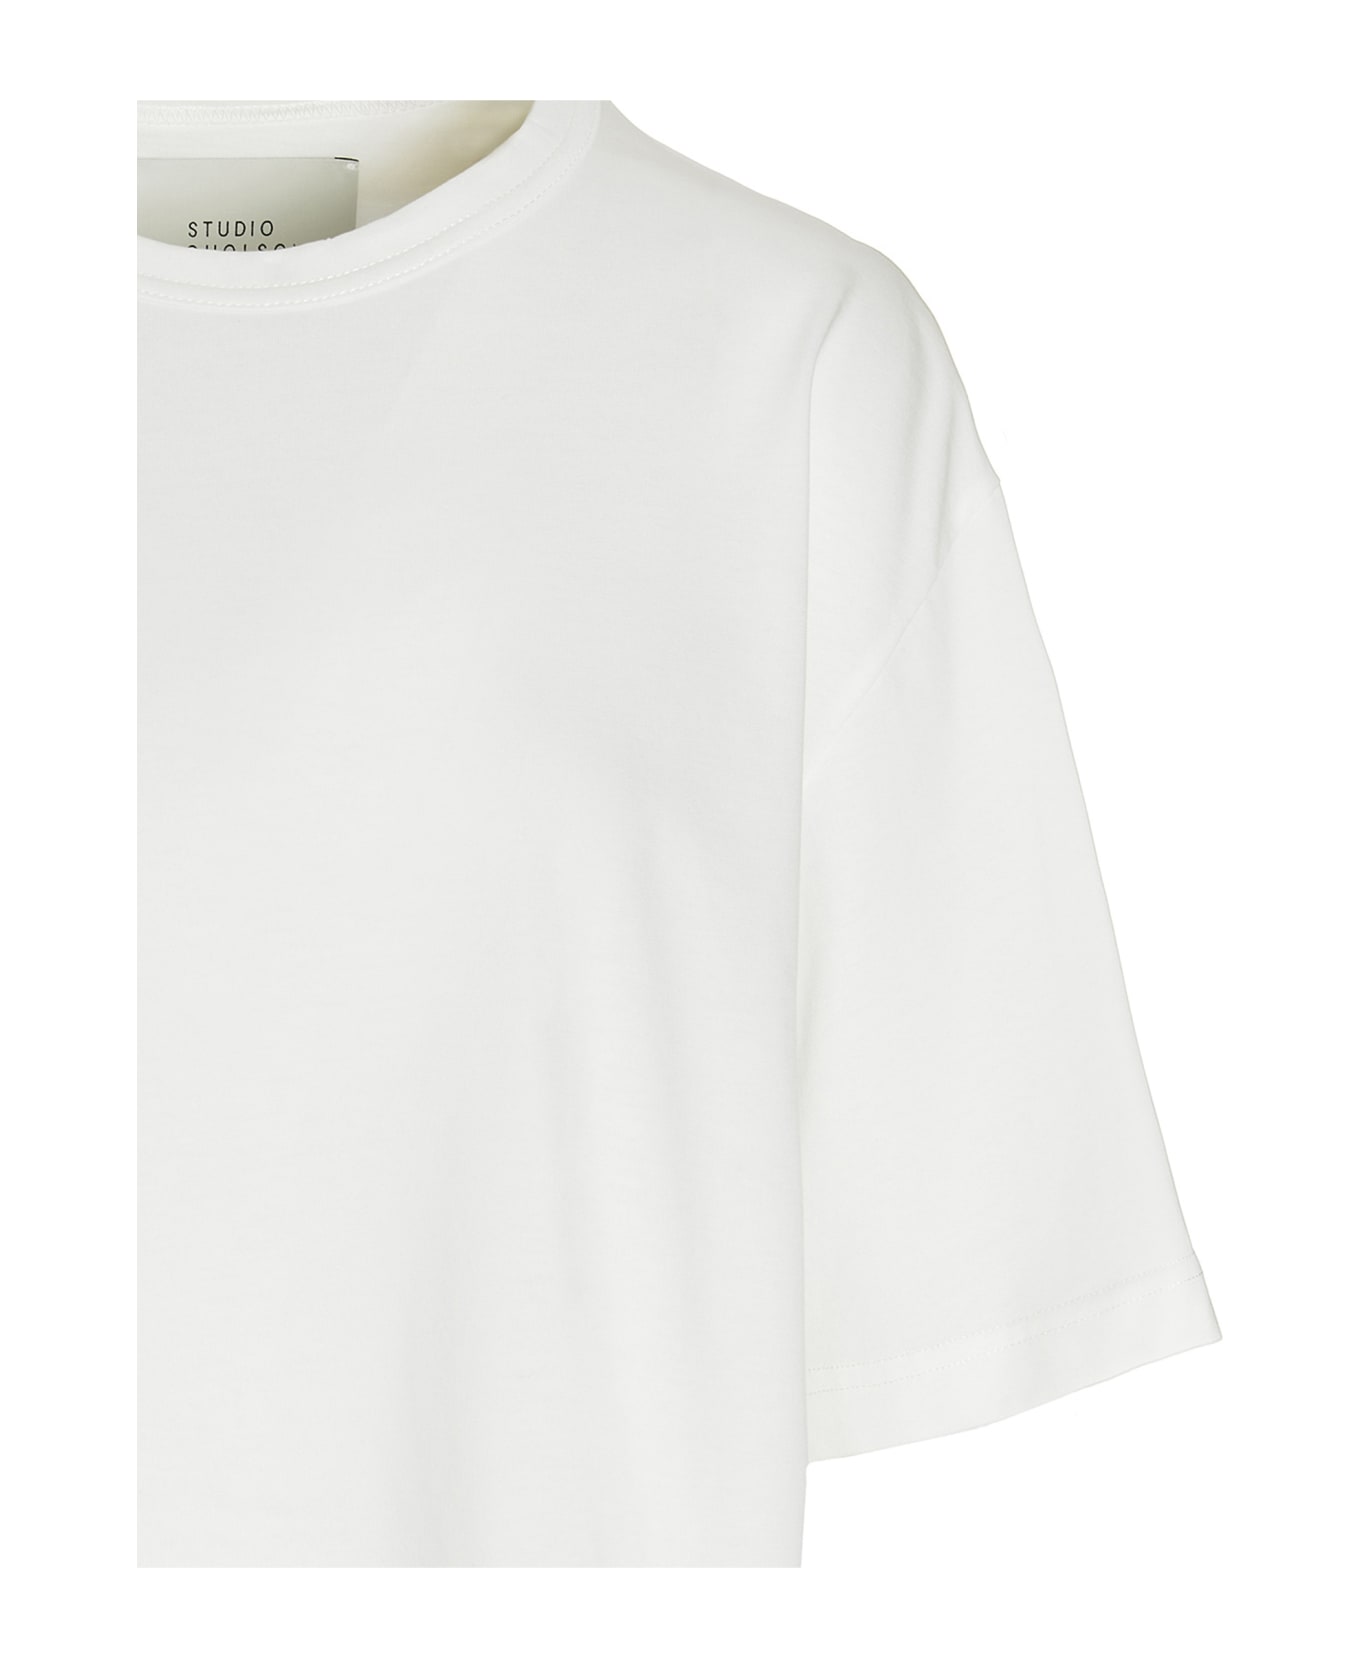 Studio Nicholson Logo T-shirt - White Tシャツ